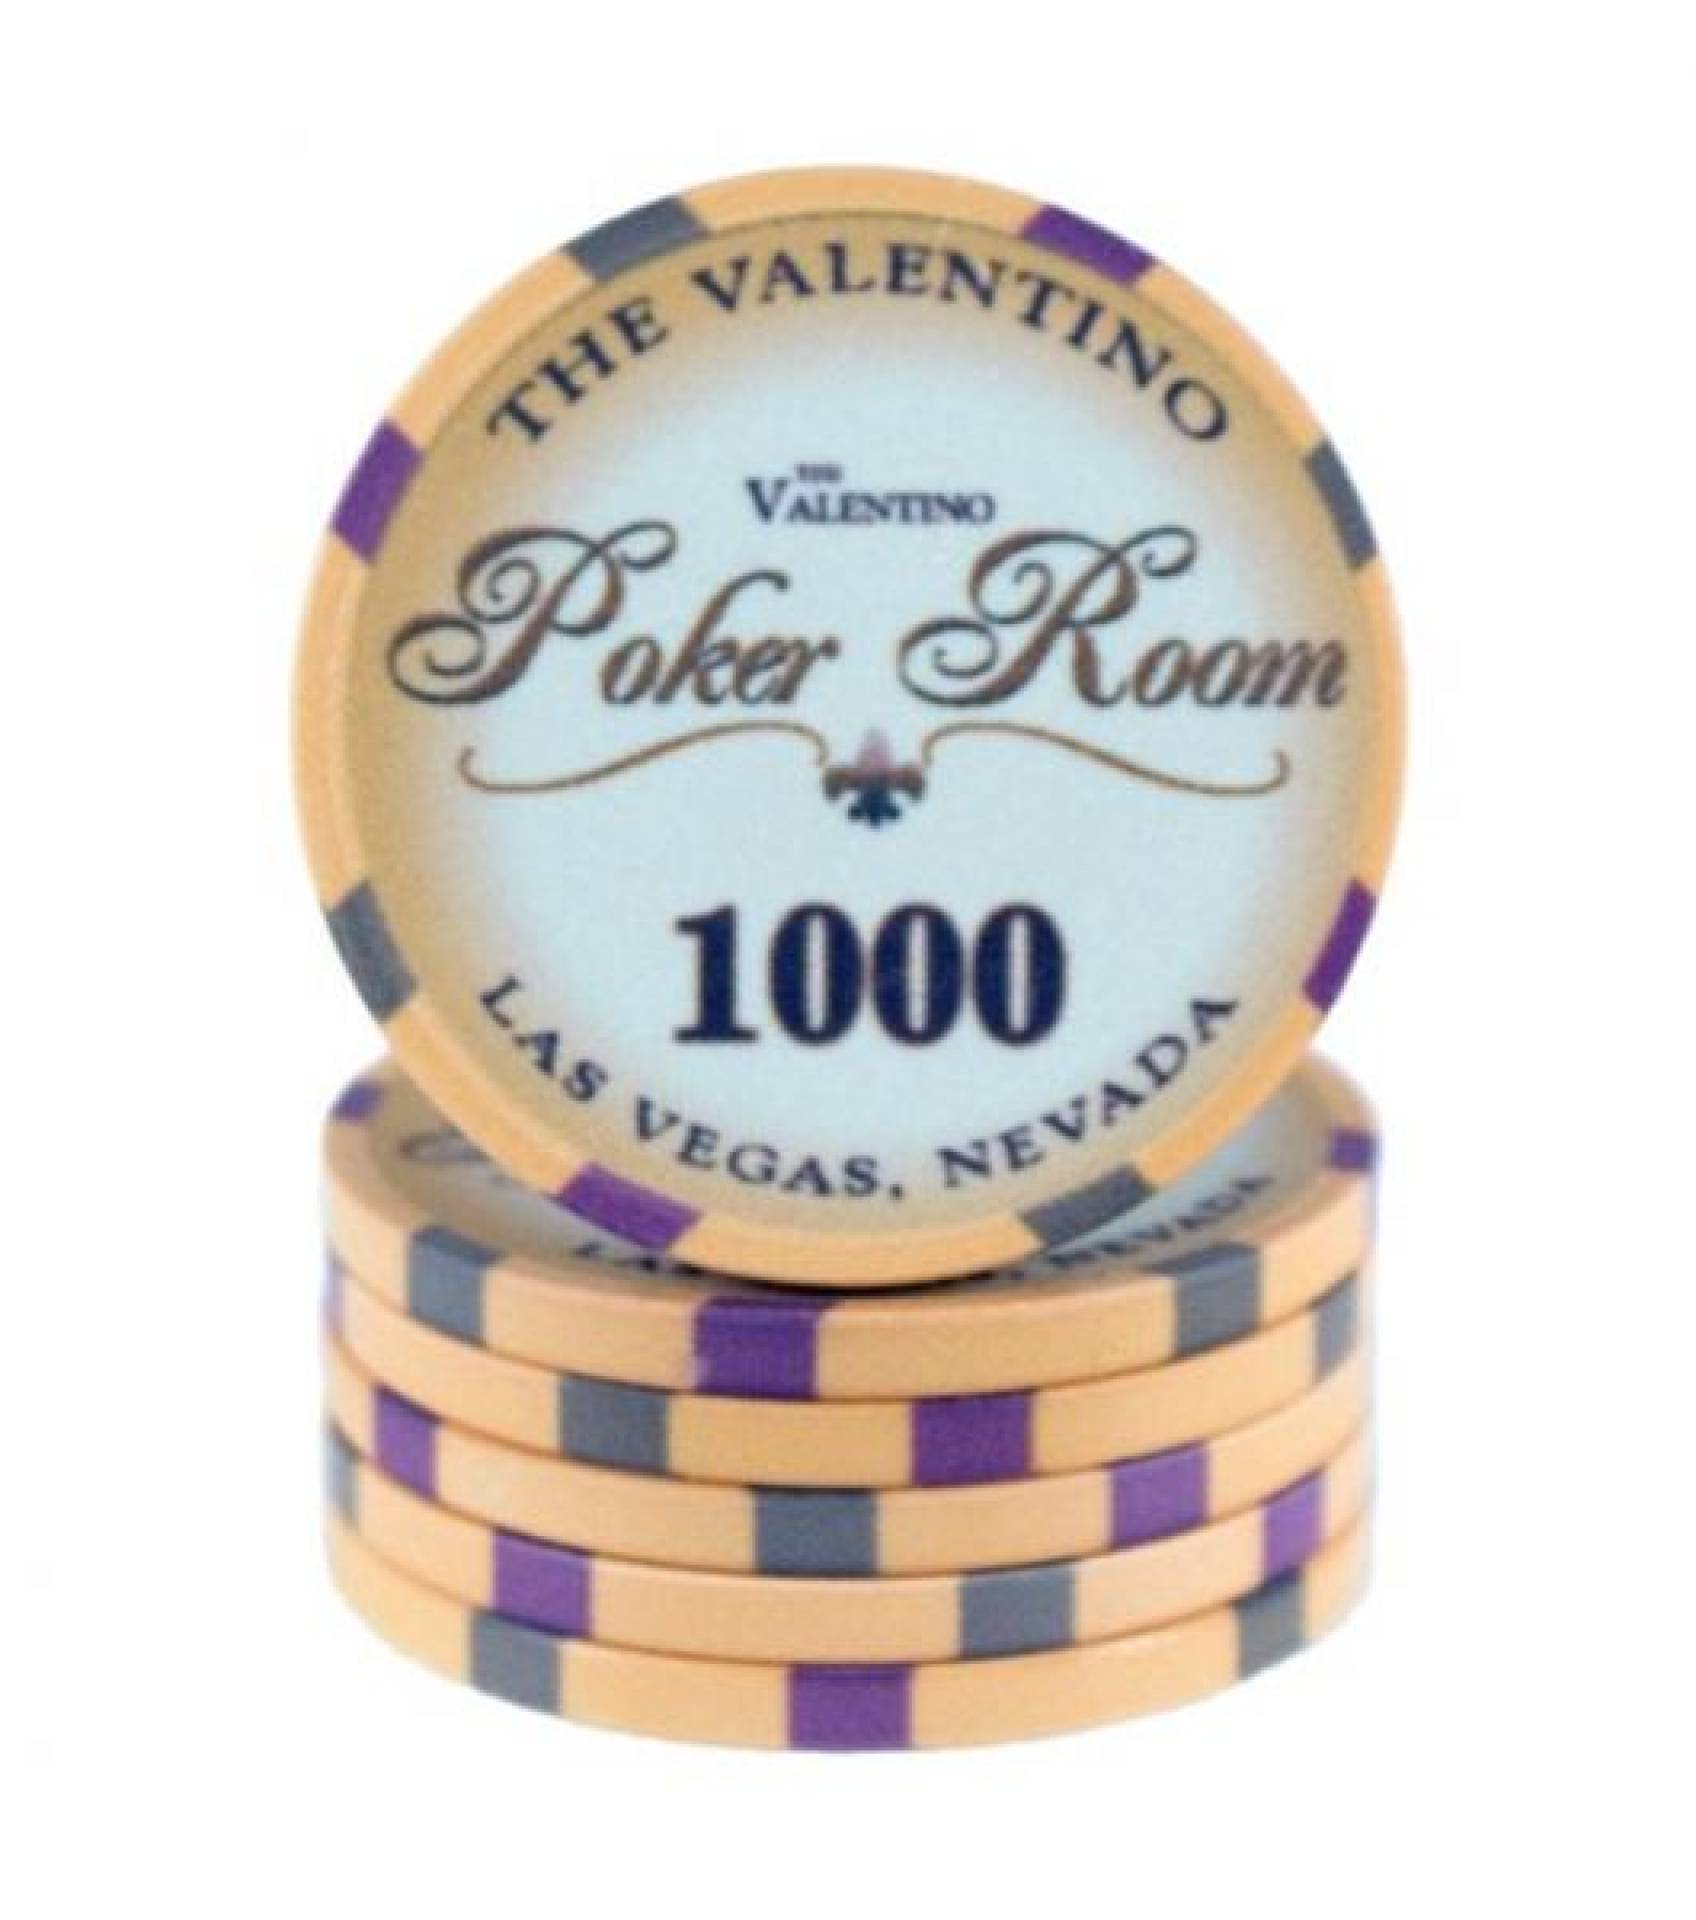 Poker chip Valentino - hodnota 1000